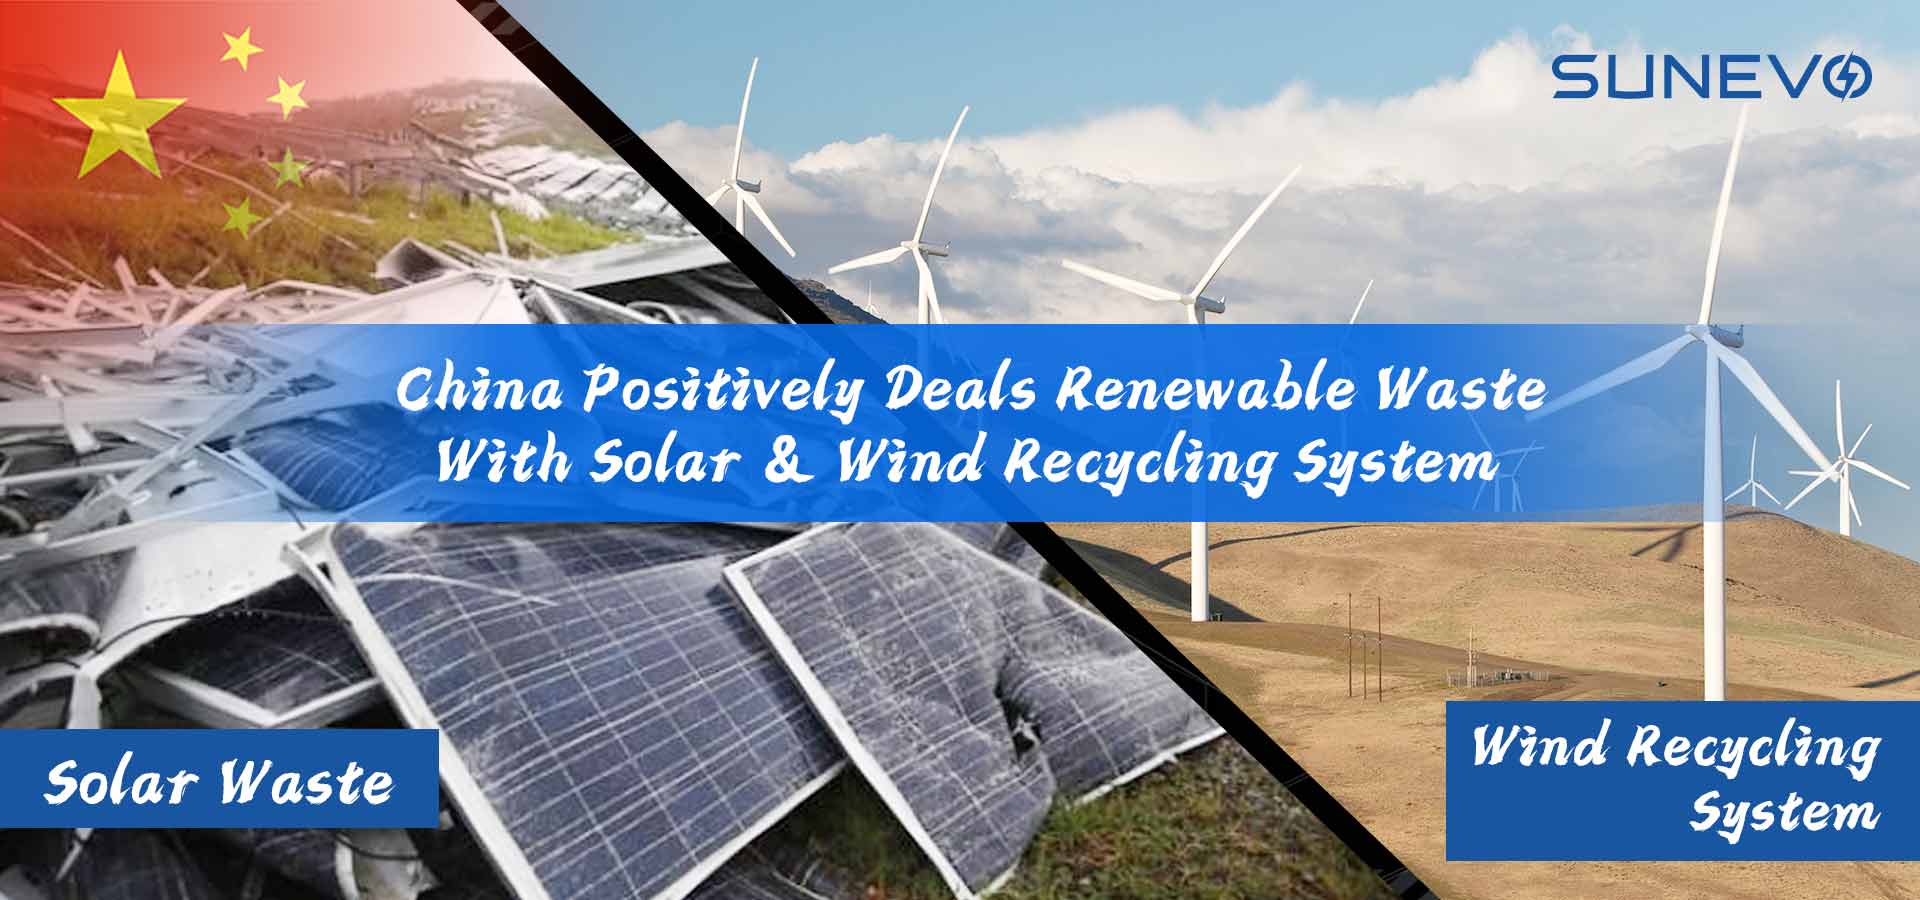 Chiny zajmują się odpadami odnawialnymi za pomocą systemów recyklingu wykorzystującego energię słoneczną i wiatrową